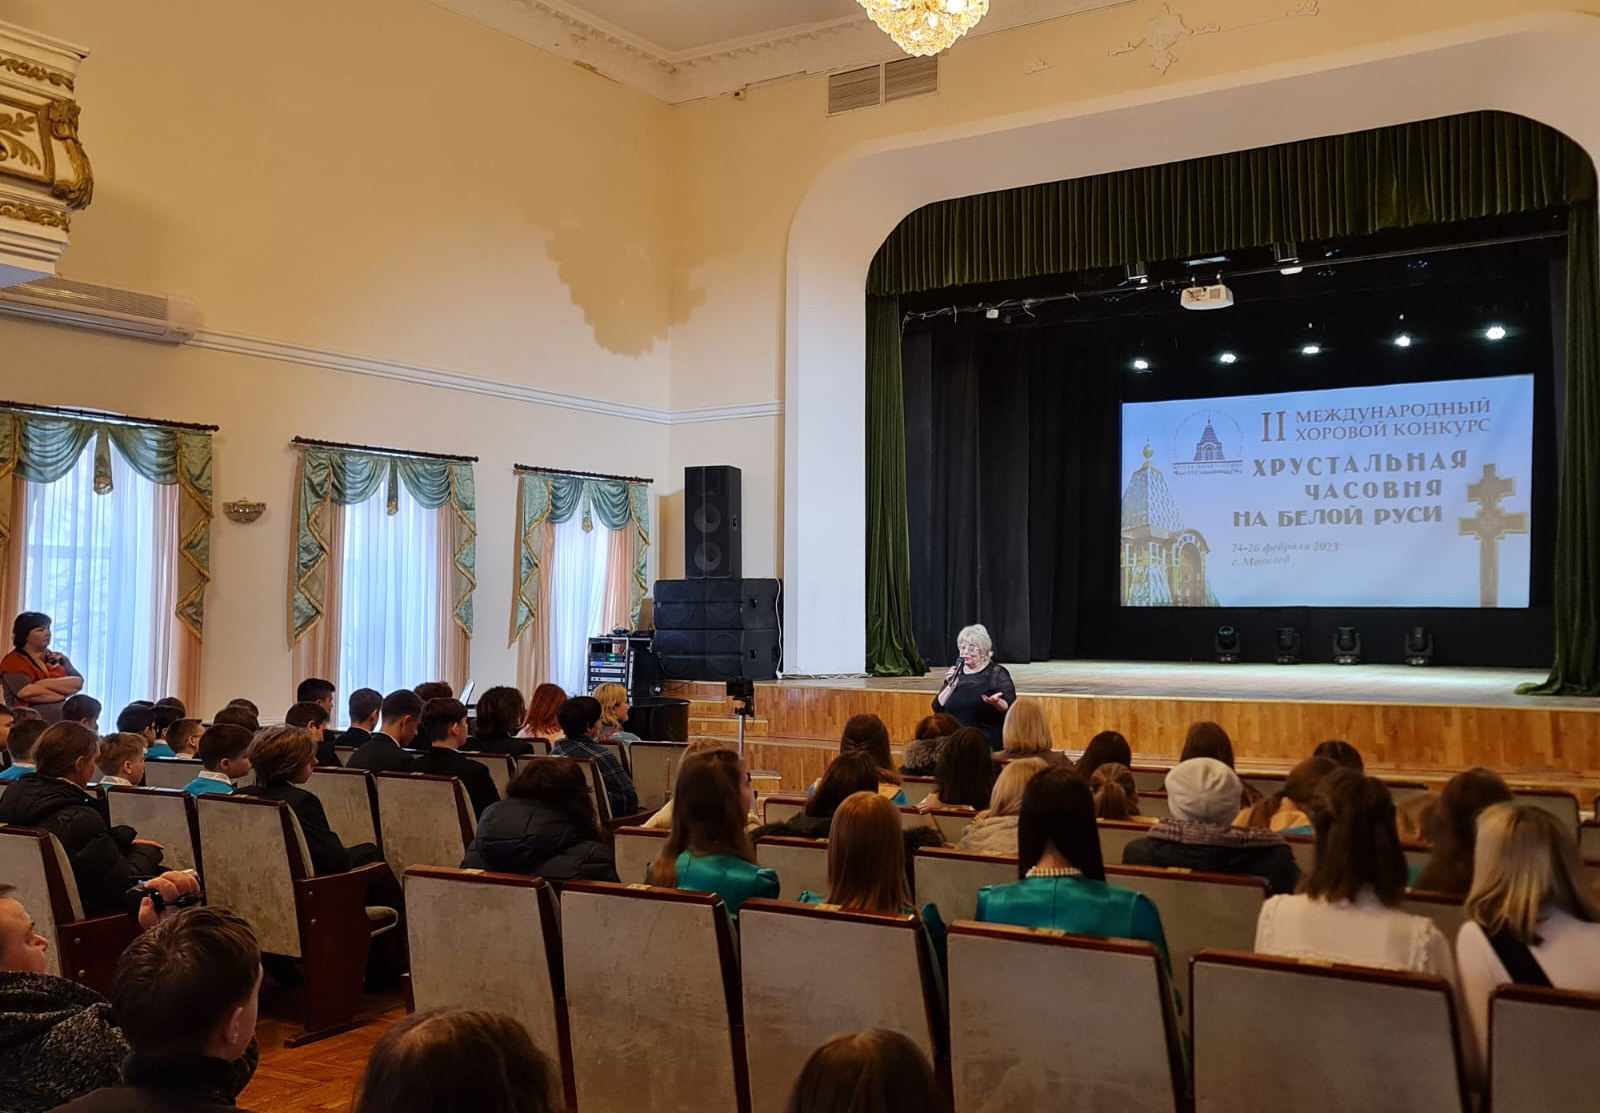 «Хрустальная часовня» в Могилёве: круглый стол, лекция и мастер-класс Ольги Косибород